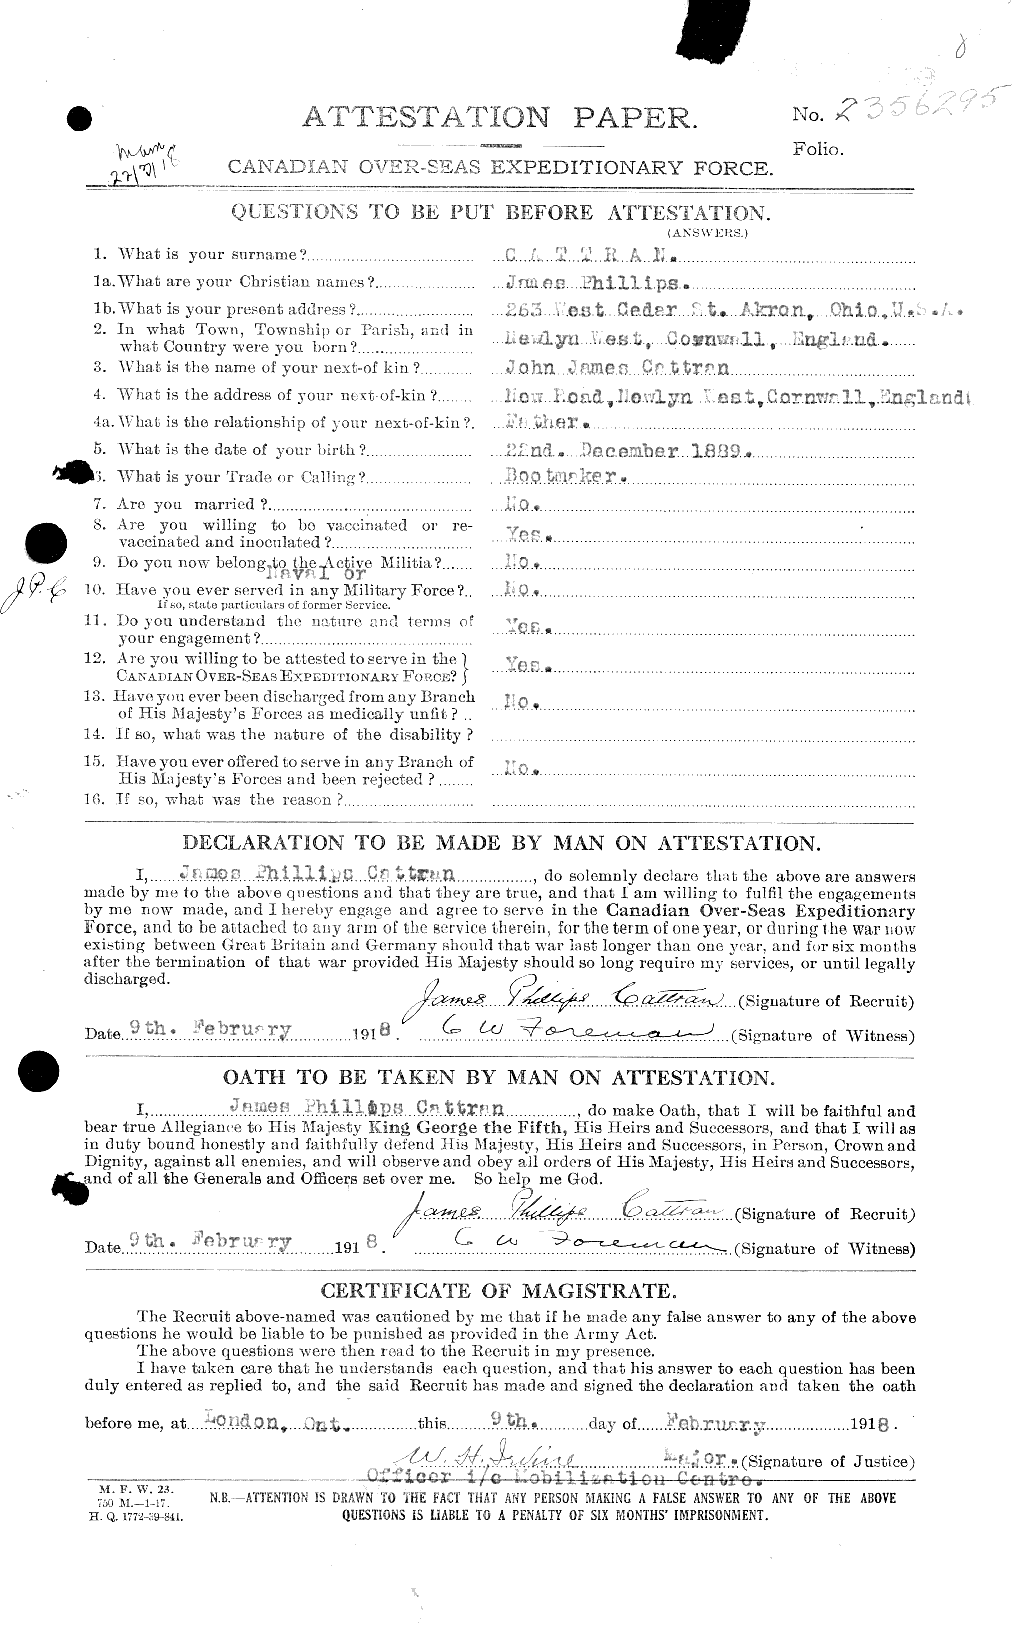 Dossiers du Personnel de la Première Guerre mondiale - CEC 007464a